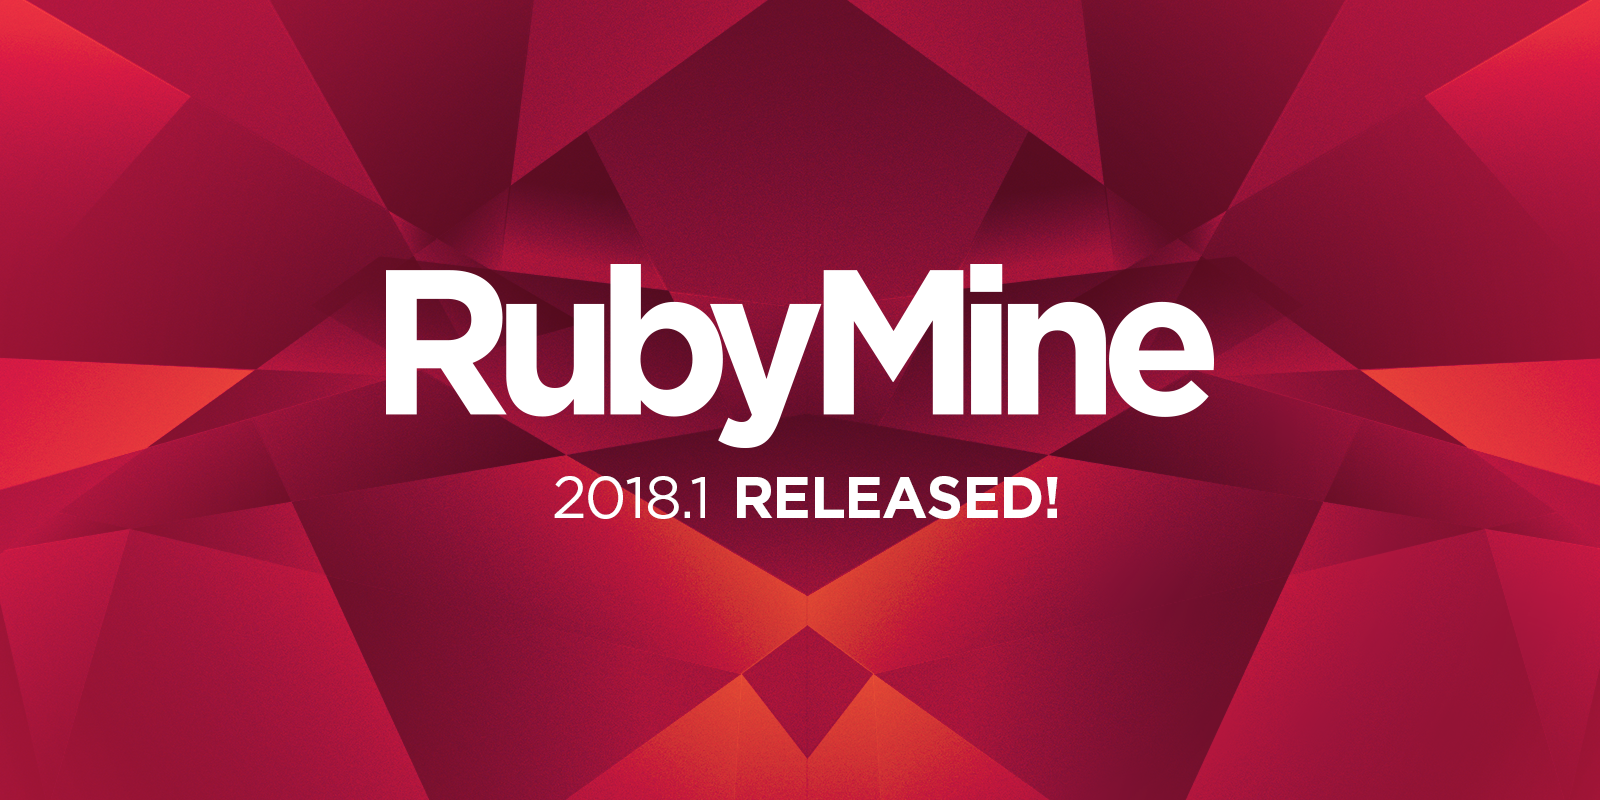 RUBYMINE logo. Rubymine